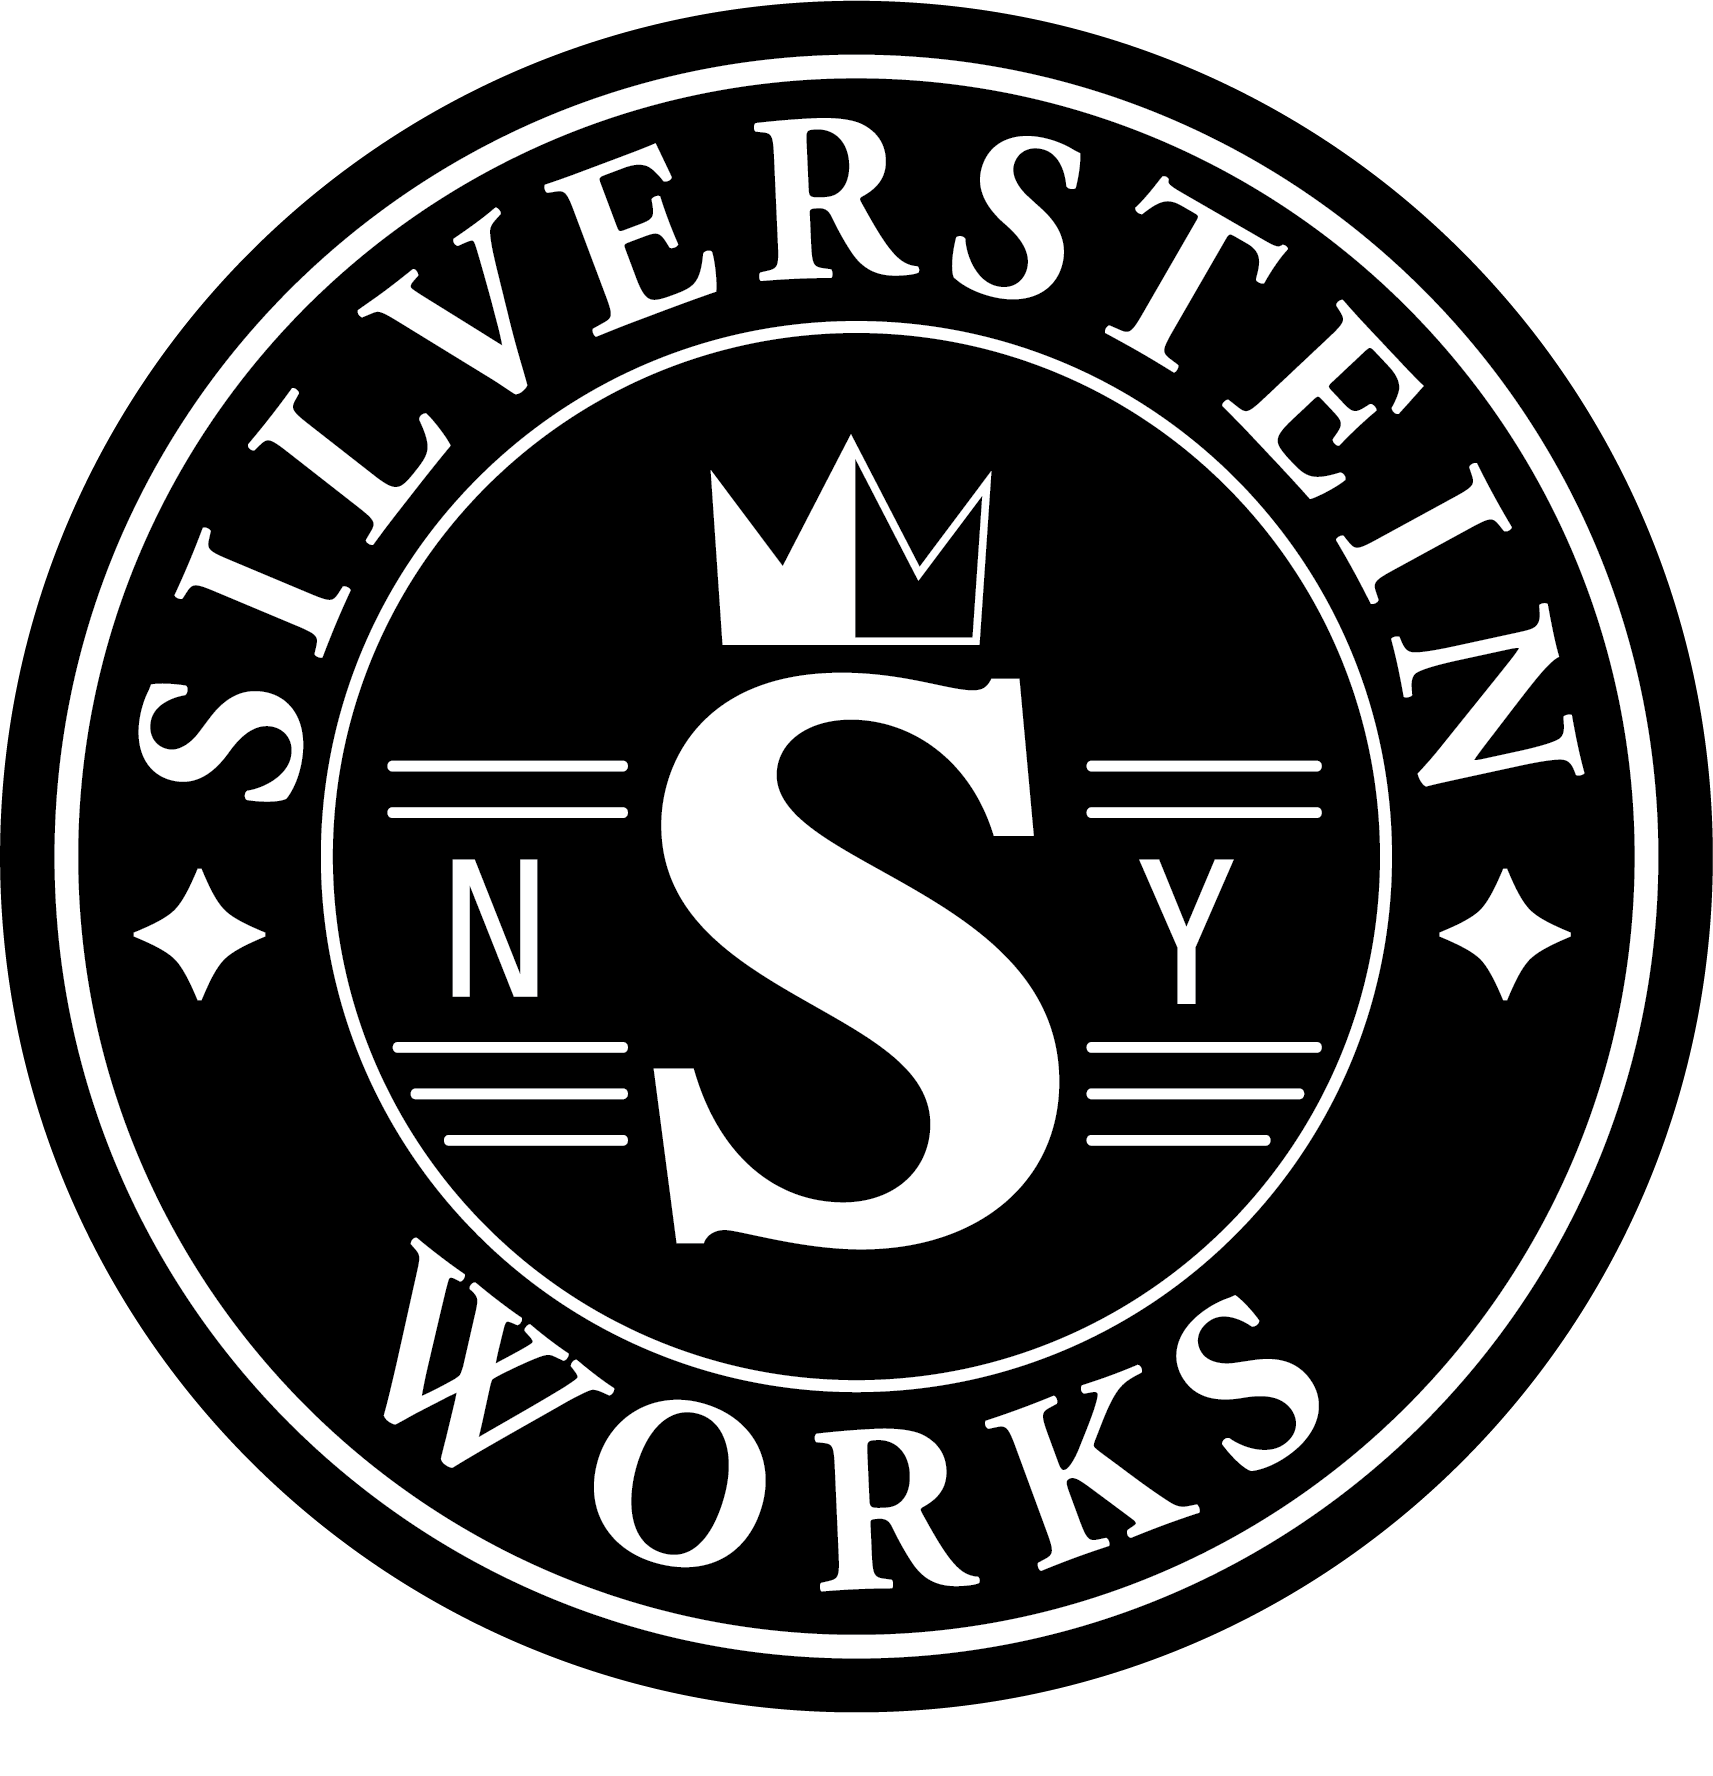 Silverstein Works